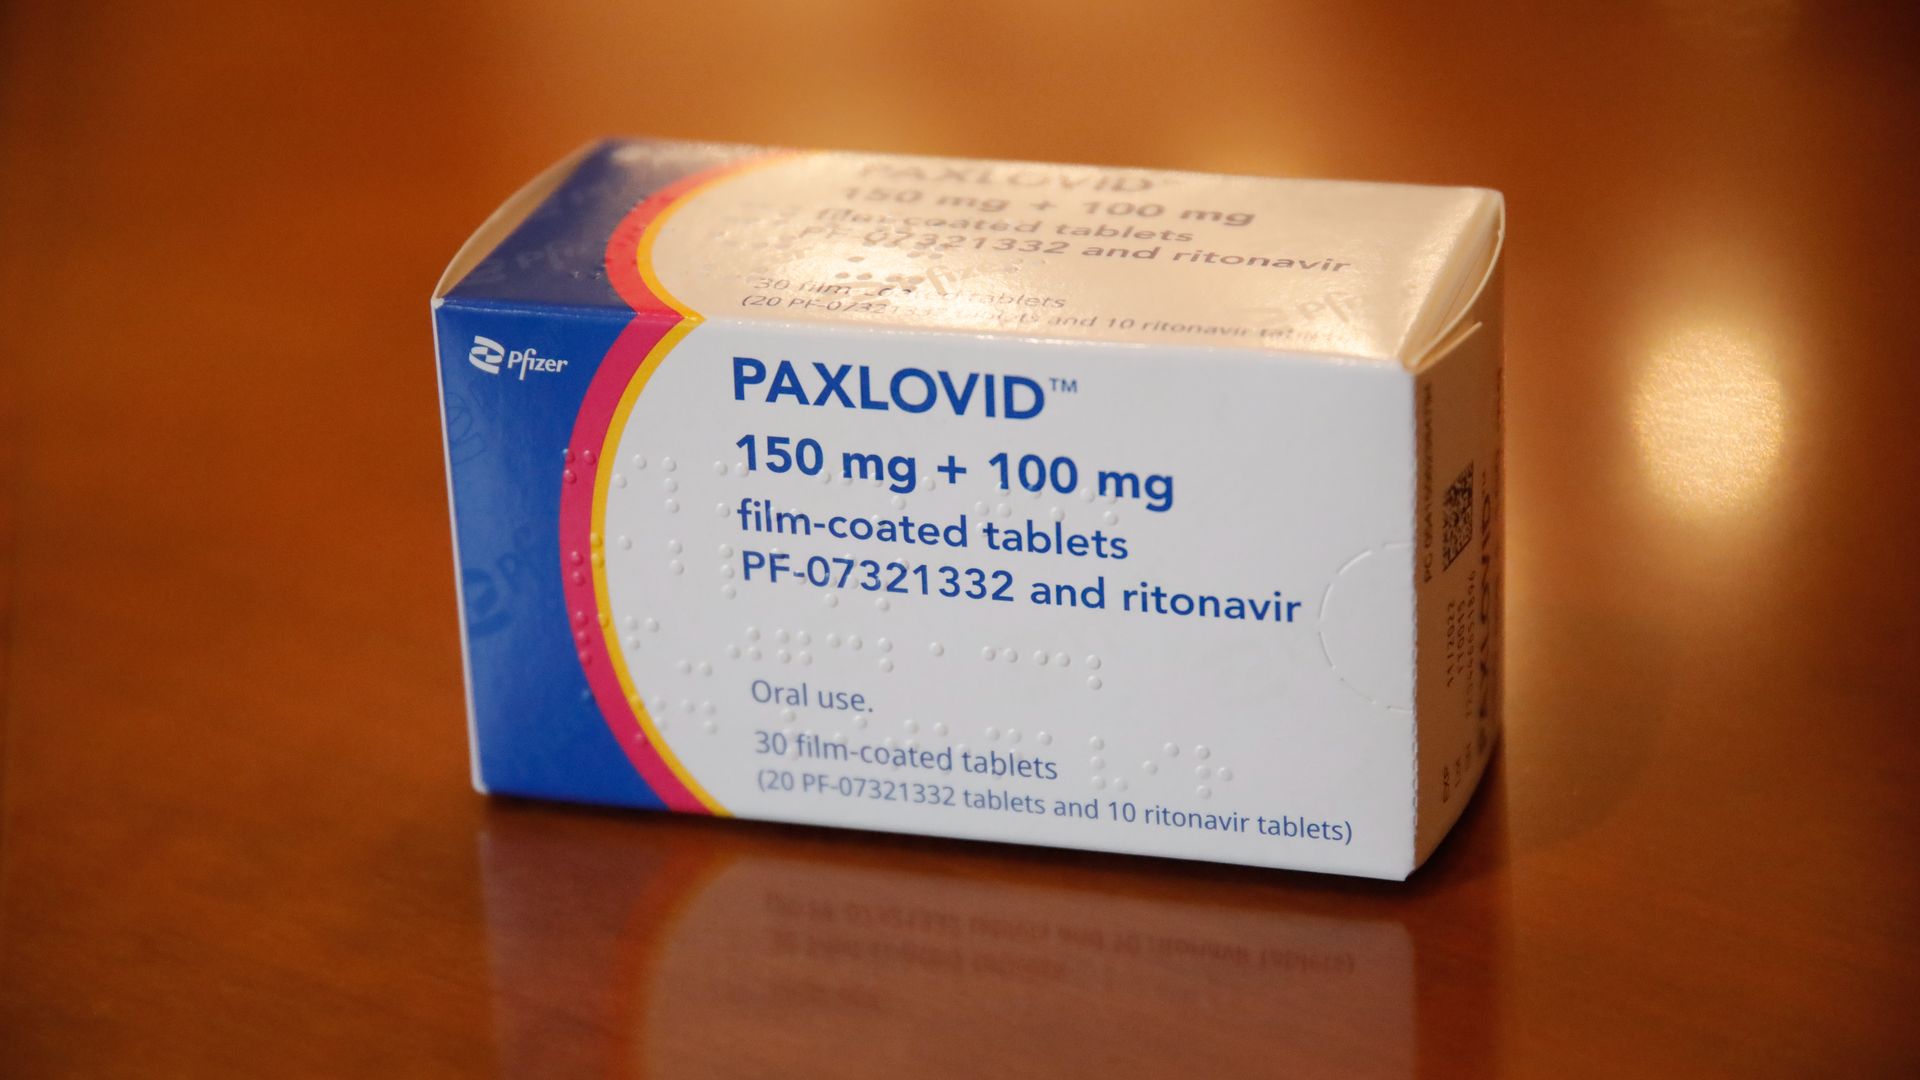 Picture of Paxlovid box